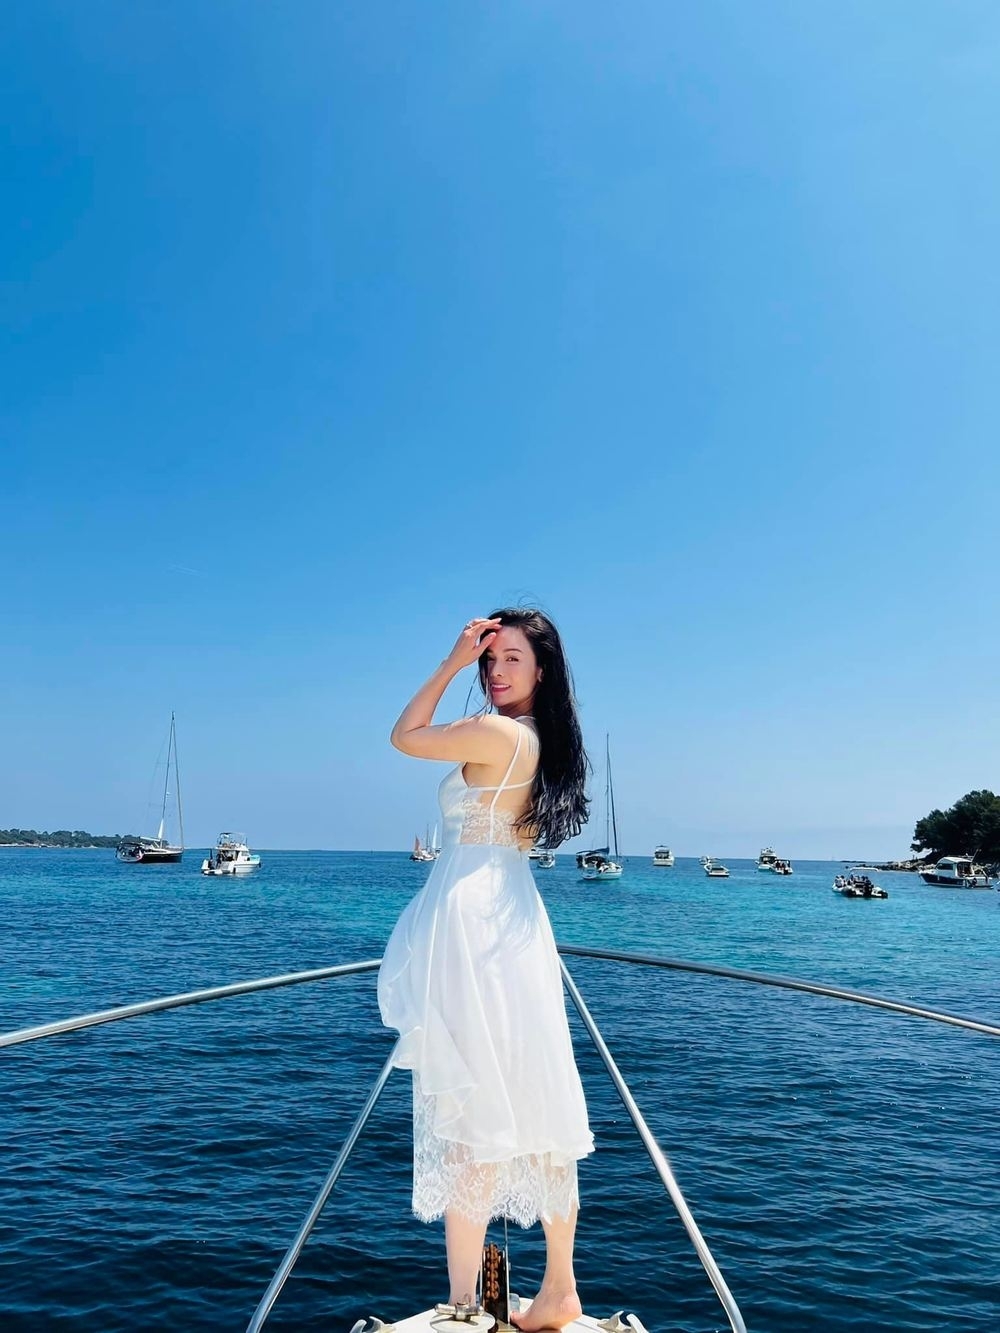  
Nữ diễn viên Tiếng Sét Trong Mưa khoe nhan sắc rạng rỡ trong chiếc váy ren khoét lưng quyến rũ. (Ảnh: FB Nhật Kim Anh)